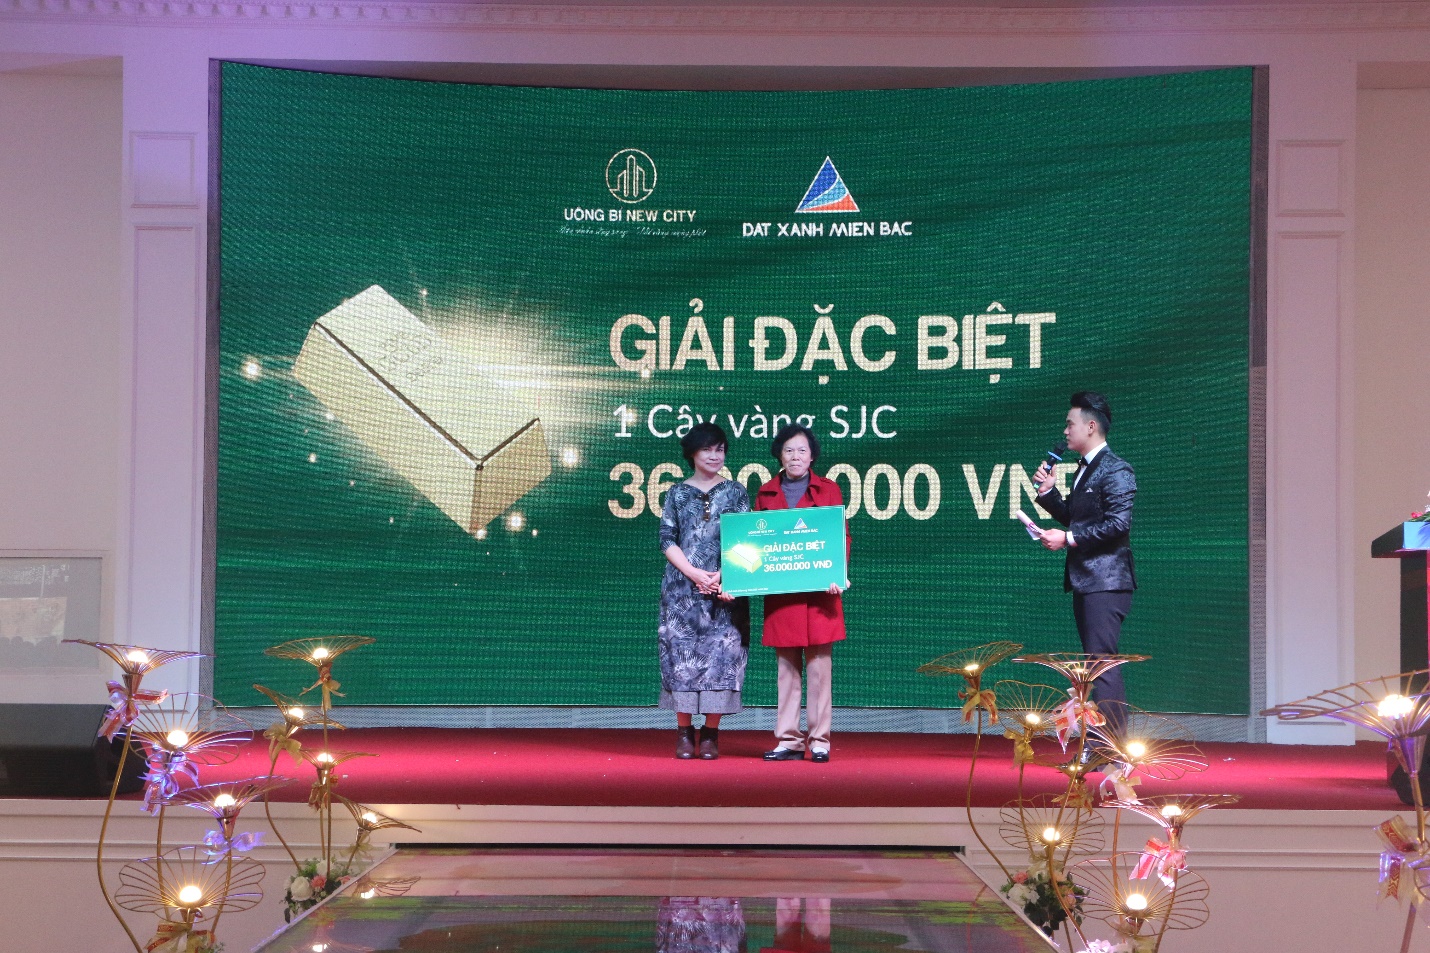 Bà Phạm Thị Vinh (TP Hạ Long, Quảng Ninh) – Khách hàng trúng giải đặc biệt tại sự kiện.